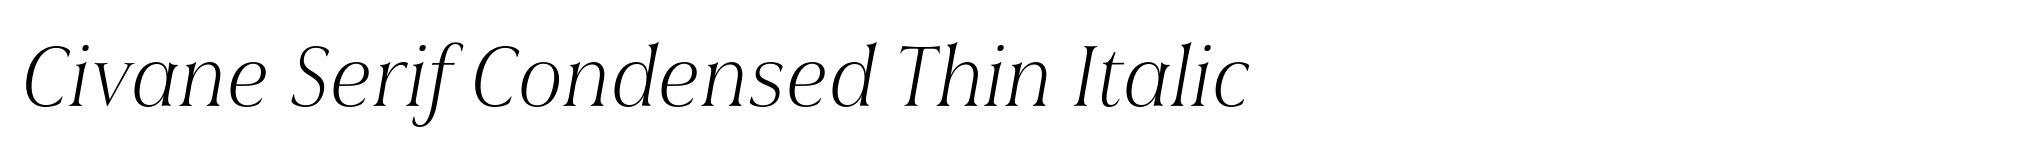 Civane Serif Condensed Thin Italic image